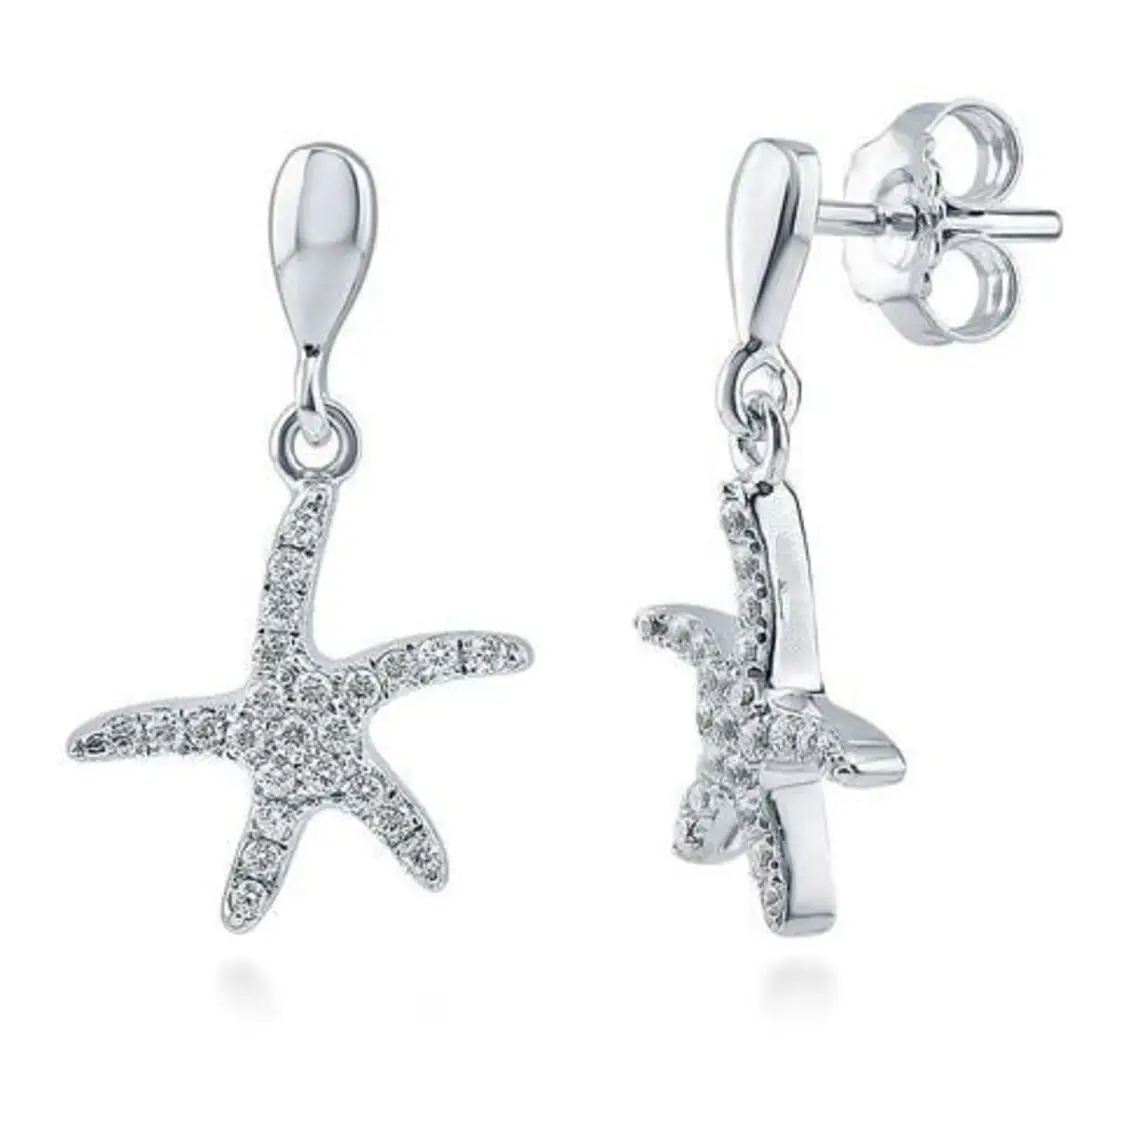 Orecchini a forma di stella marina orecchini pendenti con diamanti in ametista minimalisti piccoli gioielli estivi da spiaggia